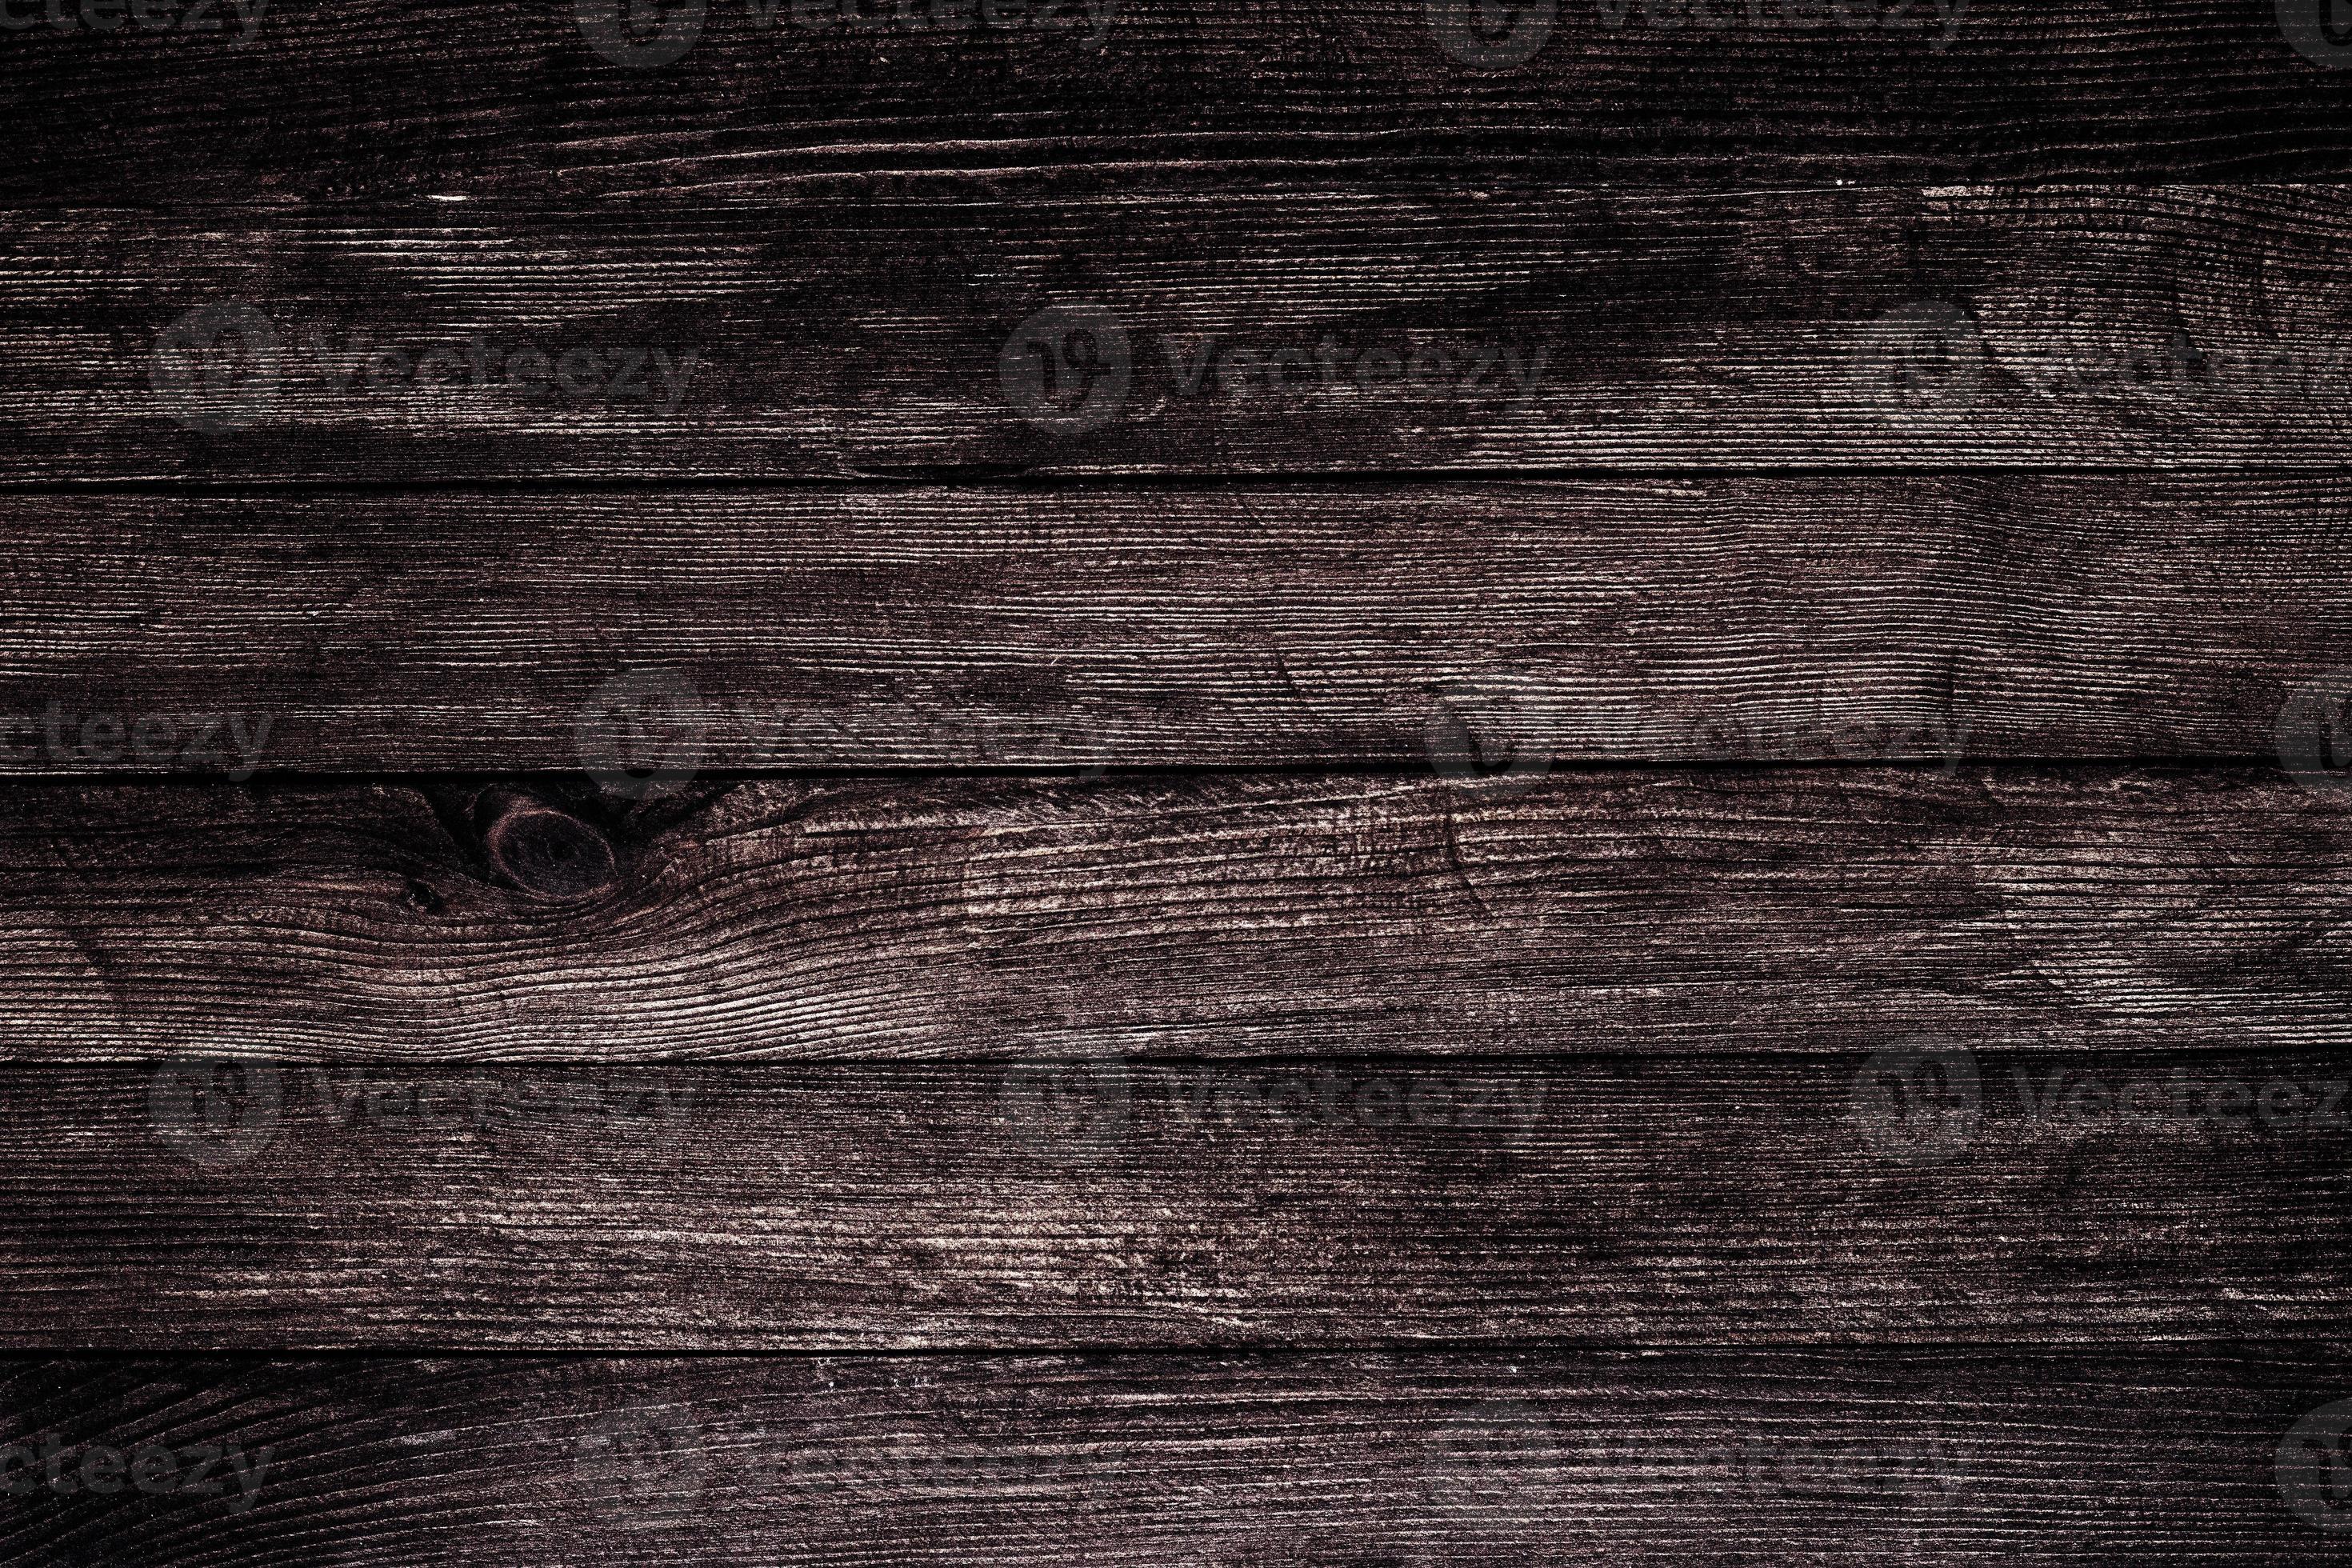 Nền gỗ cổ điển là một lựa chọn hoàn hảo để tạo không gian trang trọng và ấm cúng. Với màu nâu ấm áp, hoa văn tinh xảo và chất liệu gỗ bền chặt, bạn sẽ cảm thấy được sự ấn tượng và thơ mộng của nó. Hãy xem hình ảnh để cảm nhận được sự trang trọng và độc đáo của nền gỗ cổ điển.